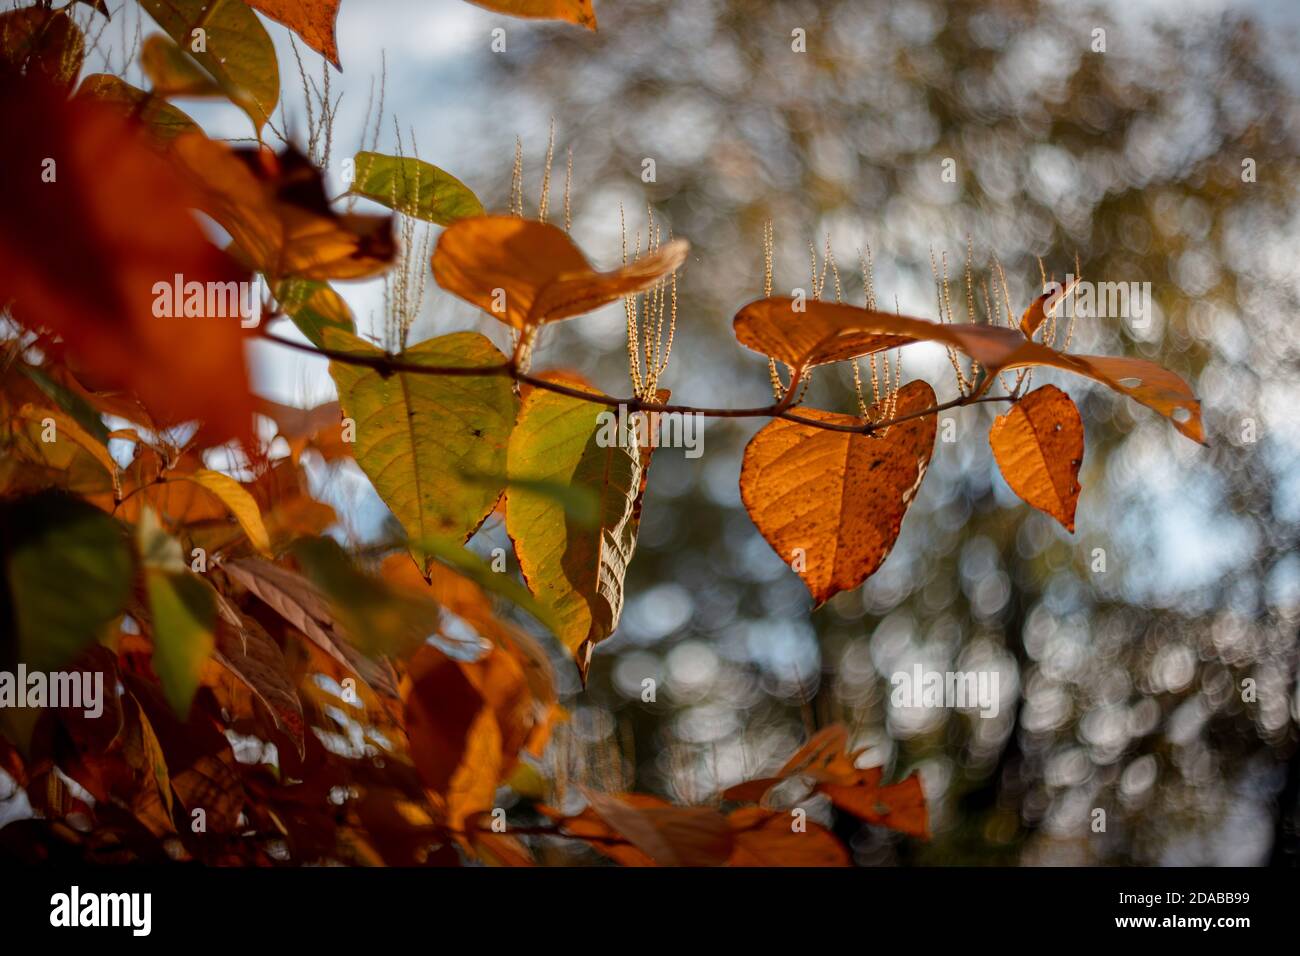 Herbstlaub auf weichem, verschwommenem, wirbelndem Hintergrund. Herbstsaison spezifische gelbe, braune und orange Farben. Stockfoto